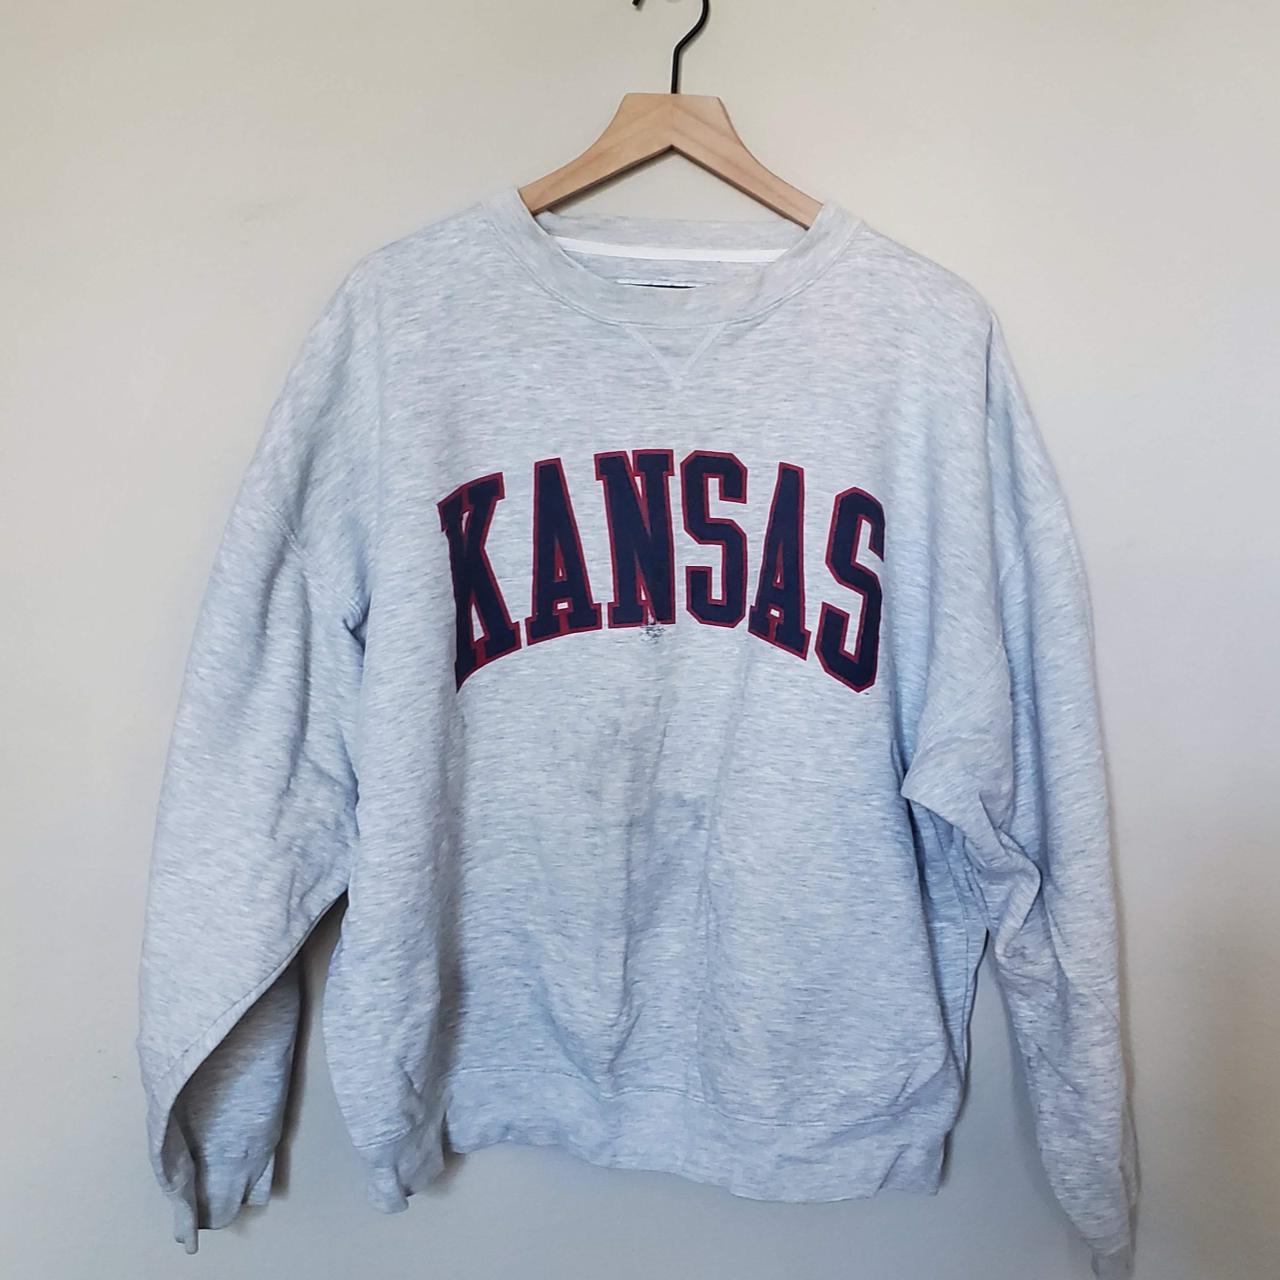 1990's Kansas crewneck, size extra large. Light grey